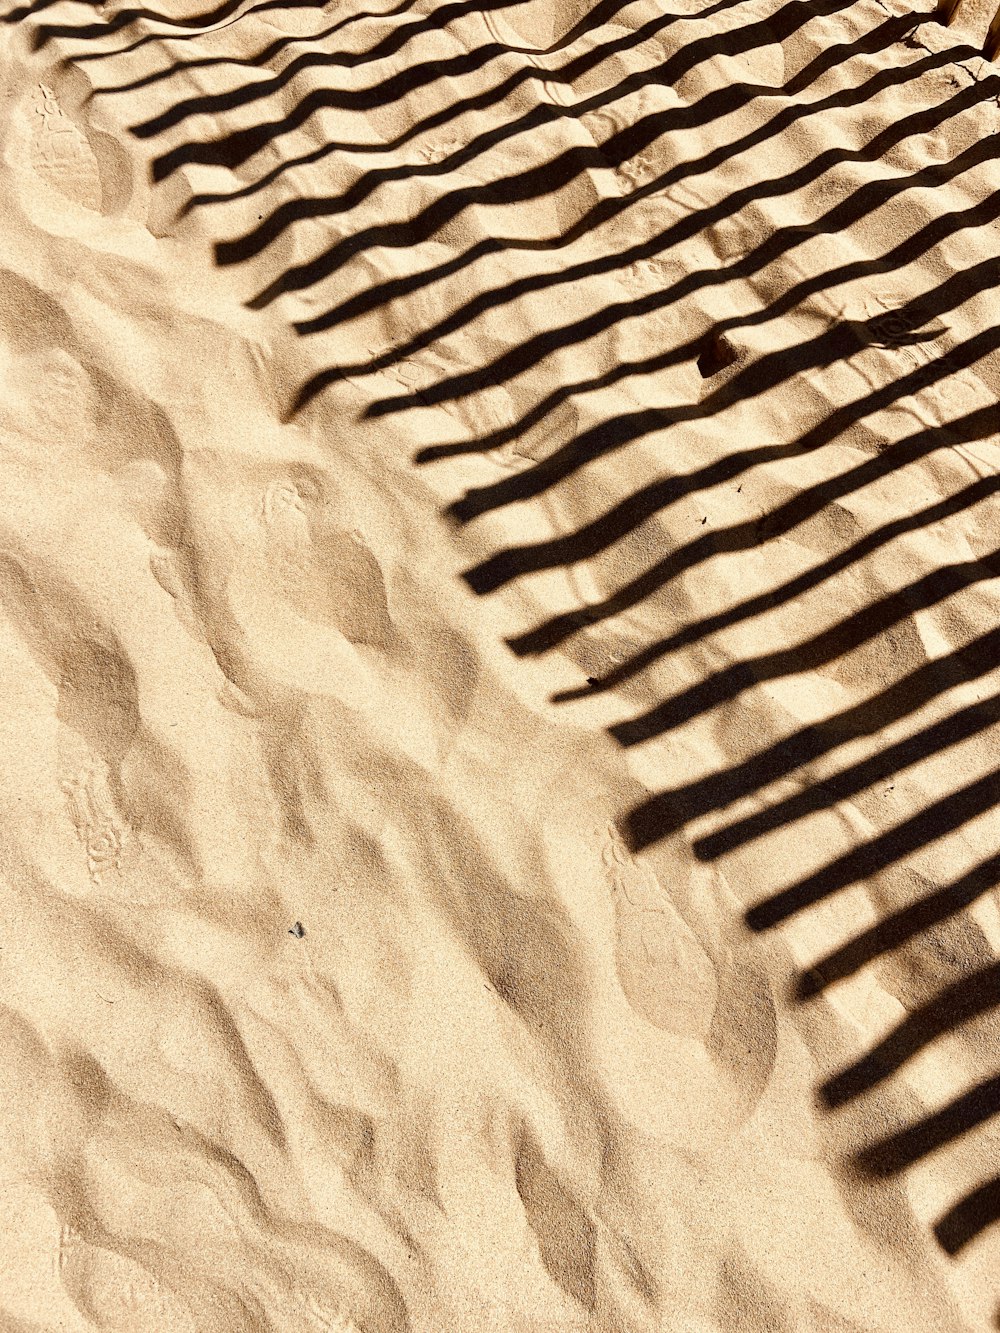 La sombra de un banco en una playa de arena